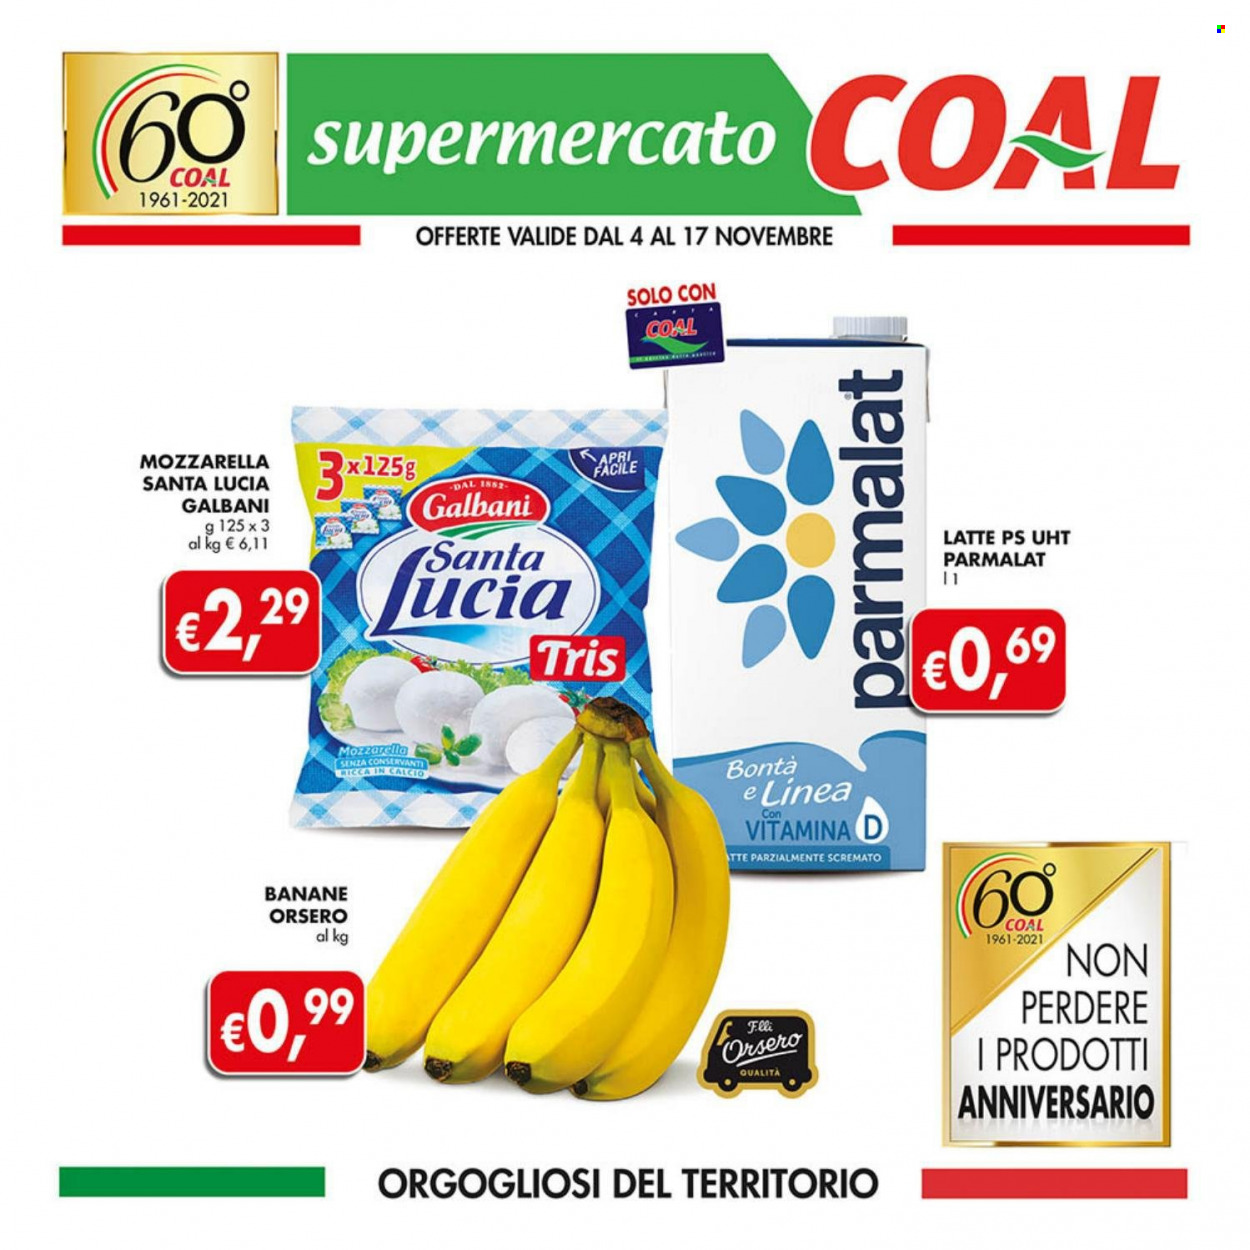 thumbnail - Volantino COAL - 4/11/2021 - 17/11/2021 - Prodotti in offerta - banane, Galbani, formaggio, mozzarella, Parmalat, latte. Pagina 1.